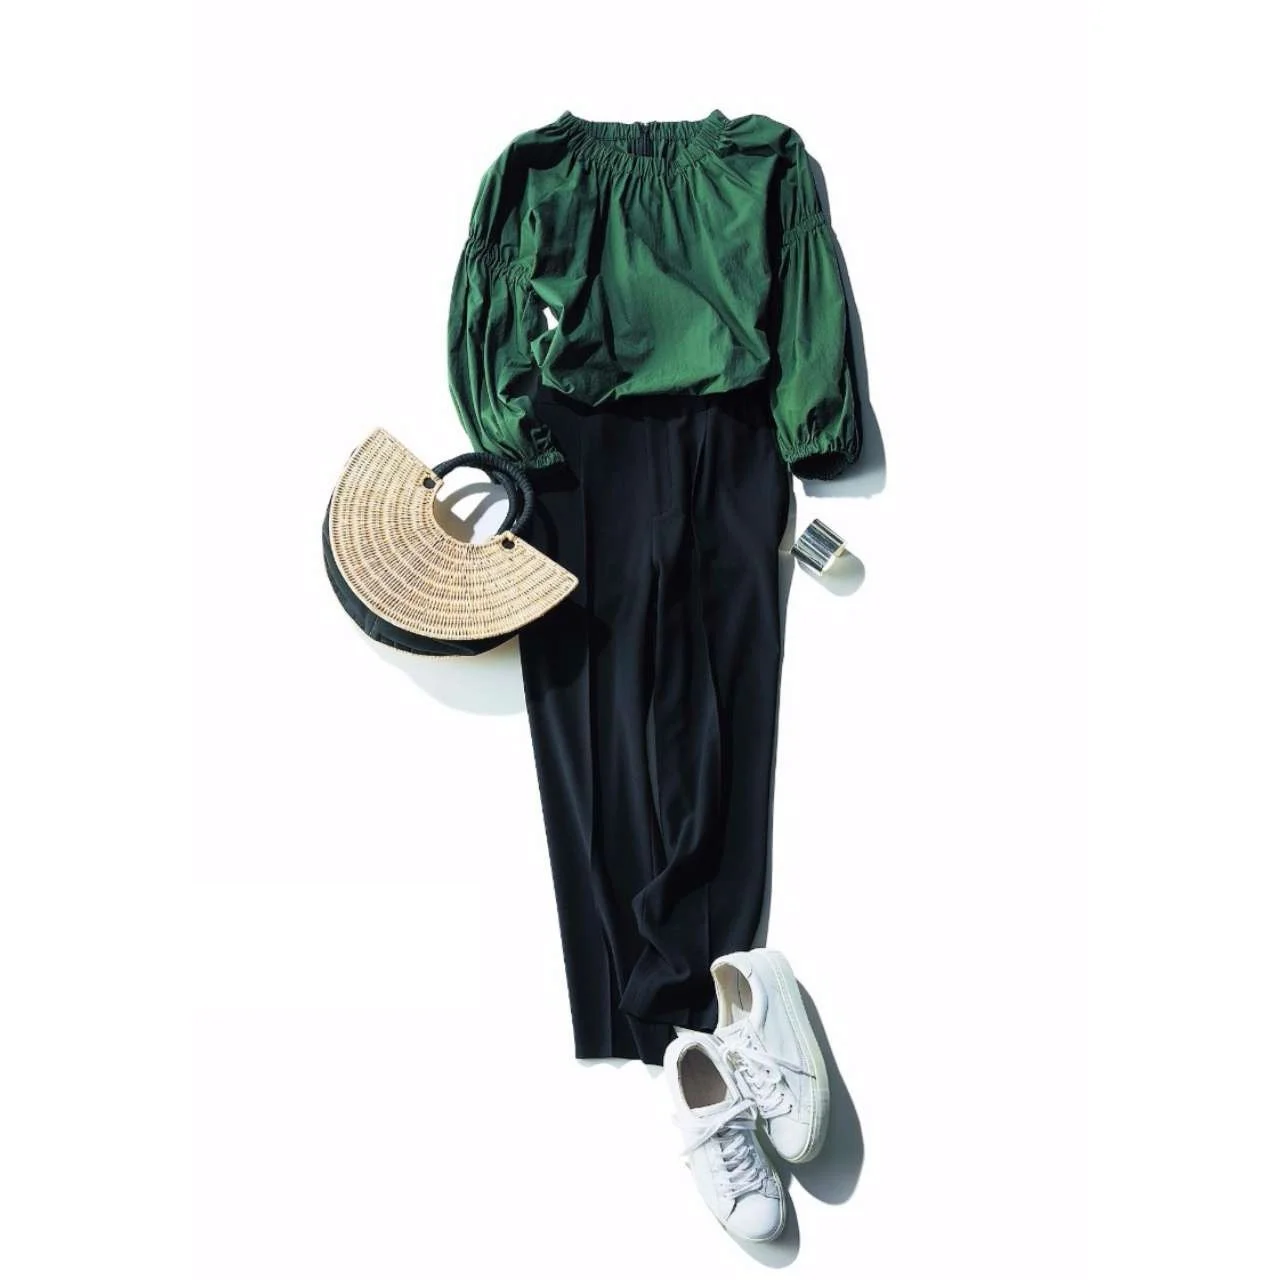 グリーンブラウス×黒パンツのファッションコーデ